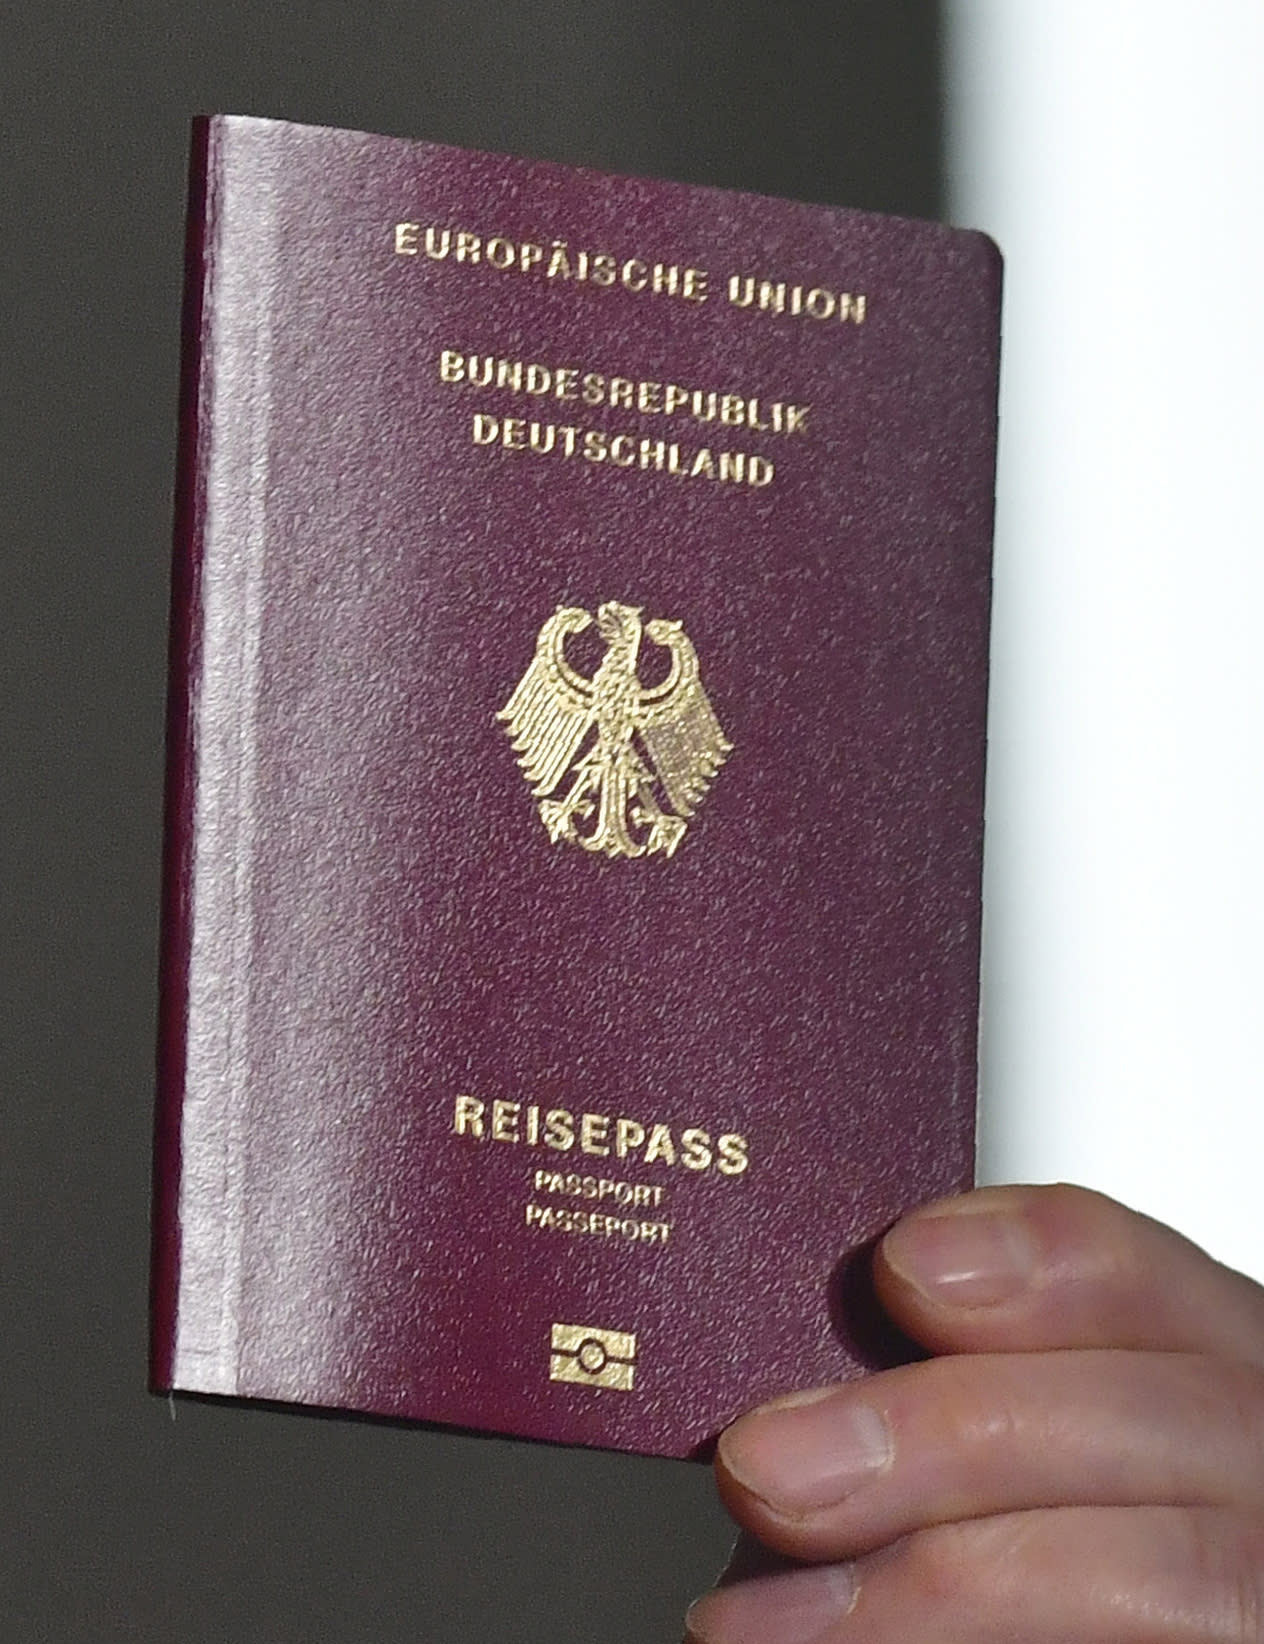 هل تأثرت أقوى جوازات سفر في العالم بالغزو الأوكراني؟